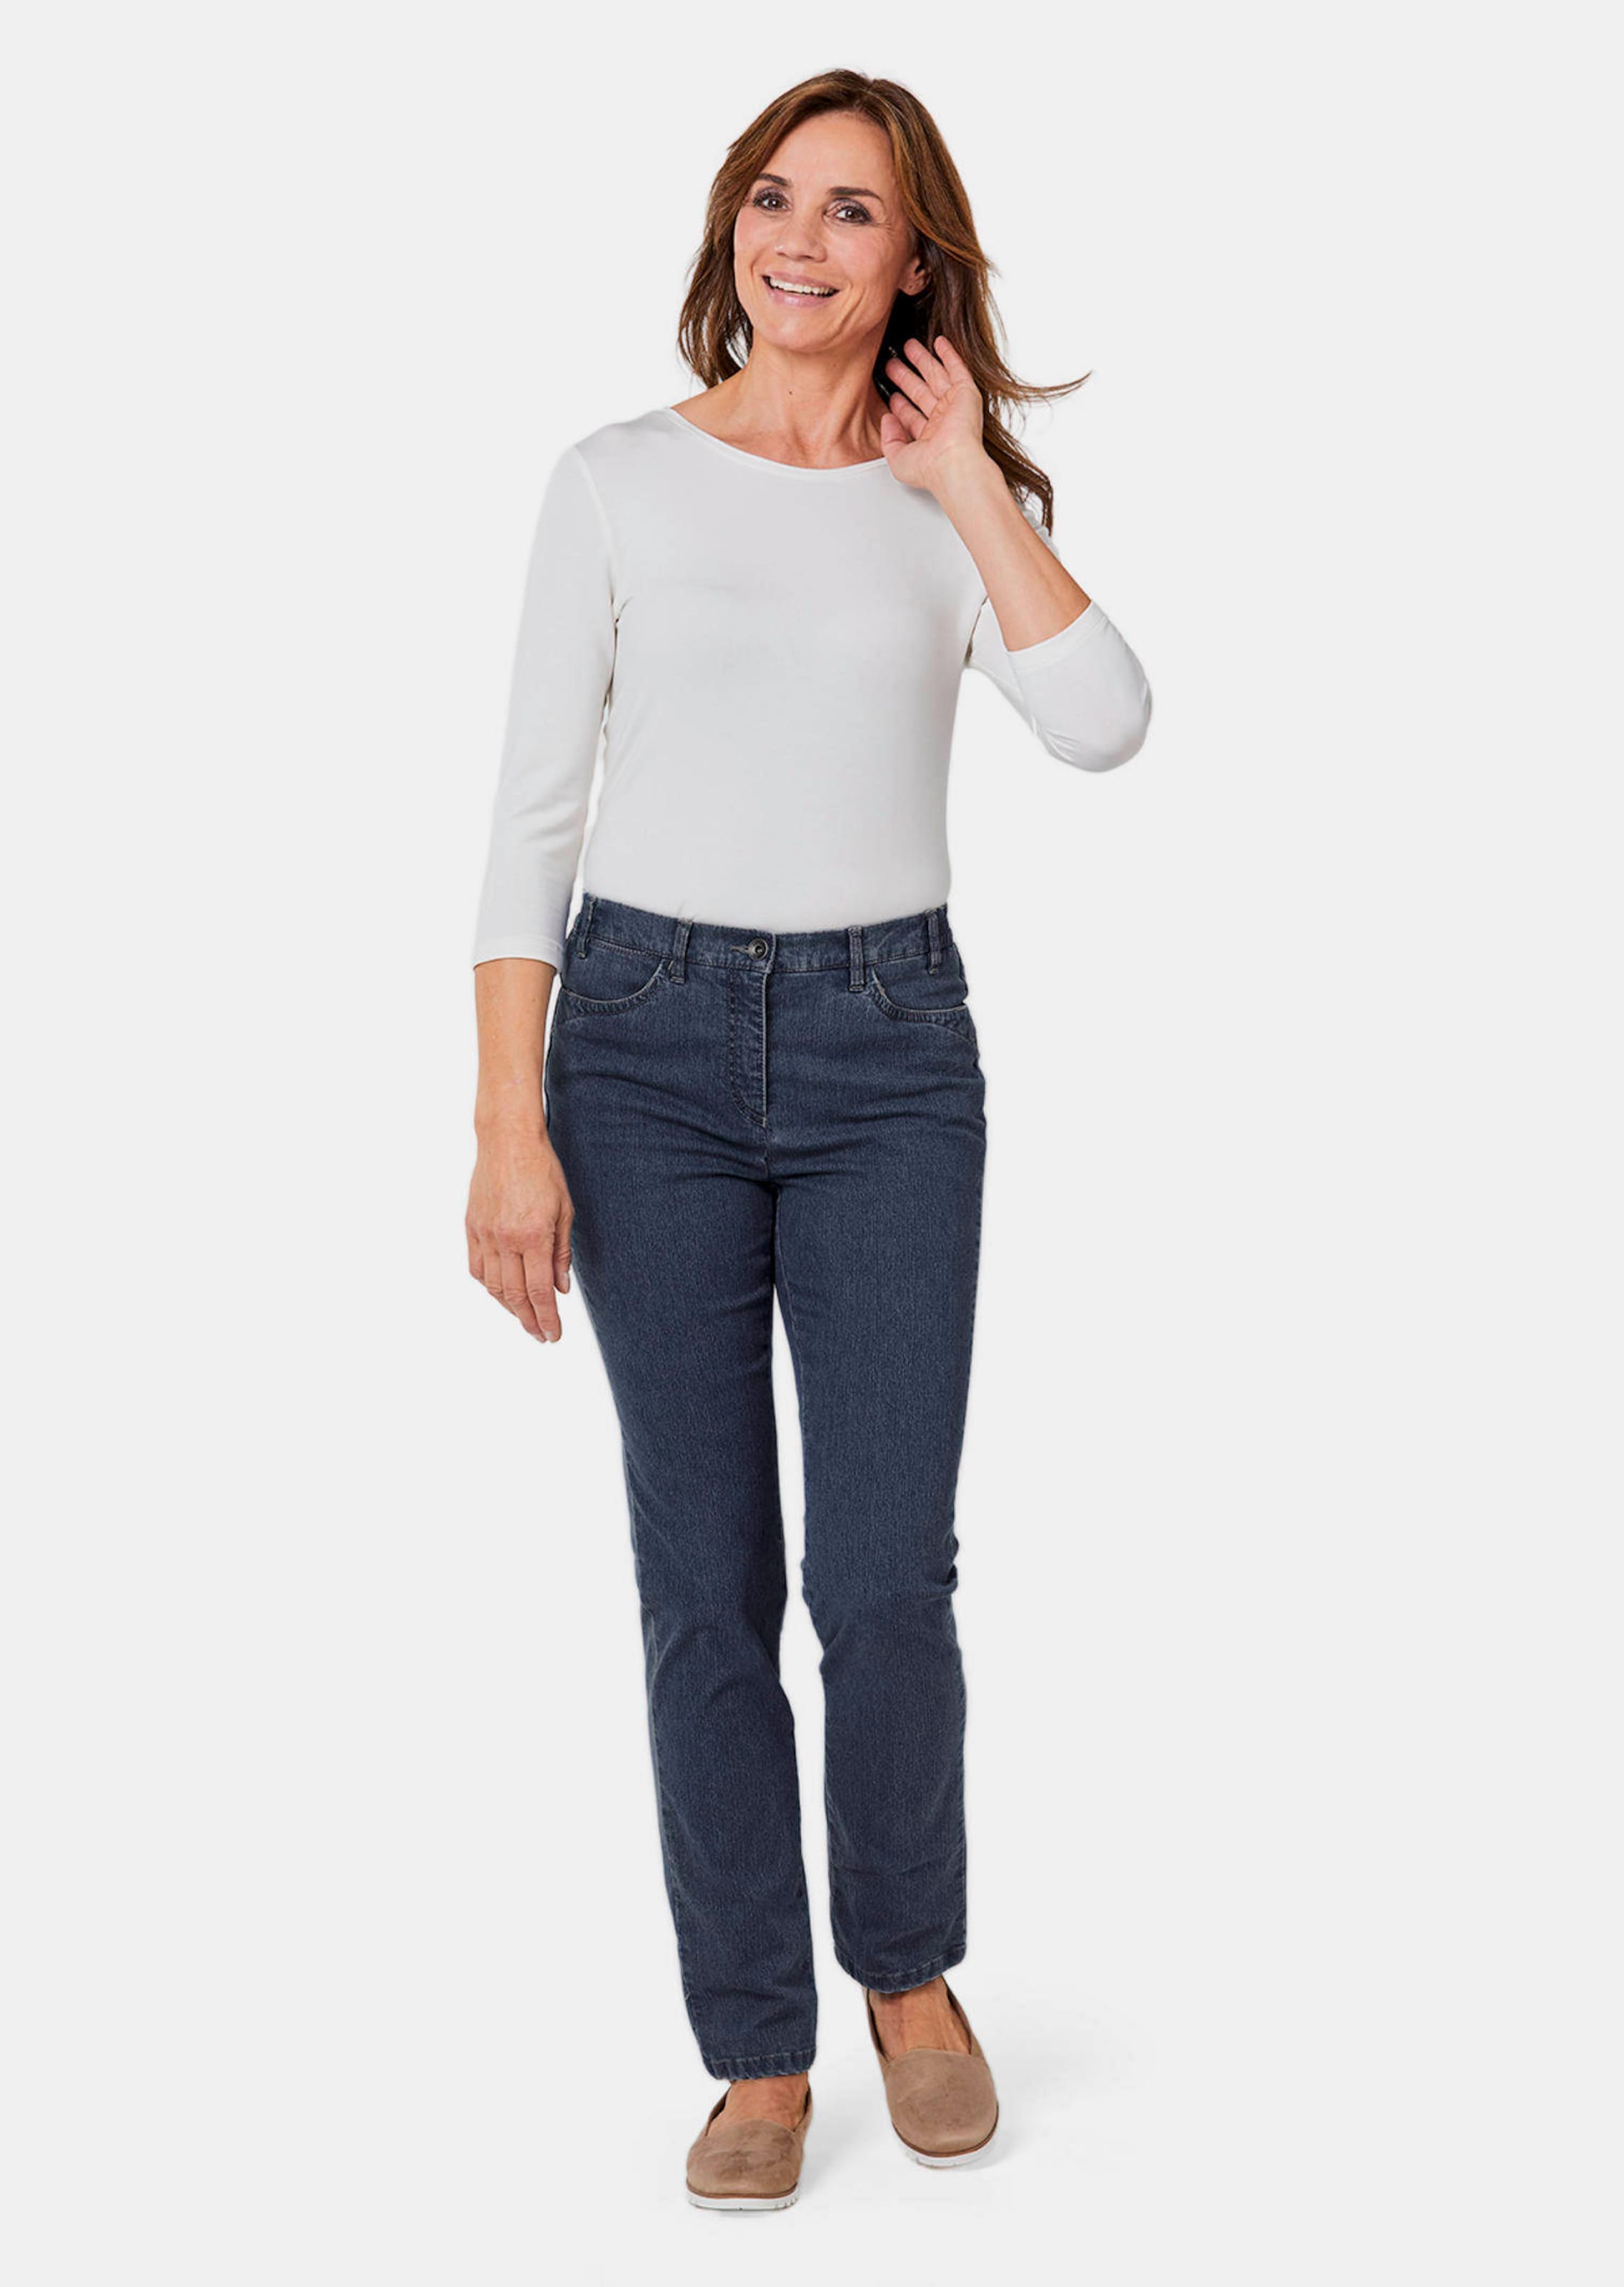 Goldner Fashion Chic versierde jeans Carla - donkerblauw 